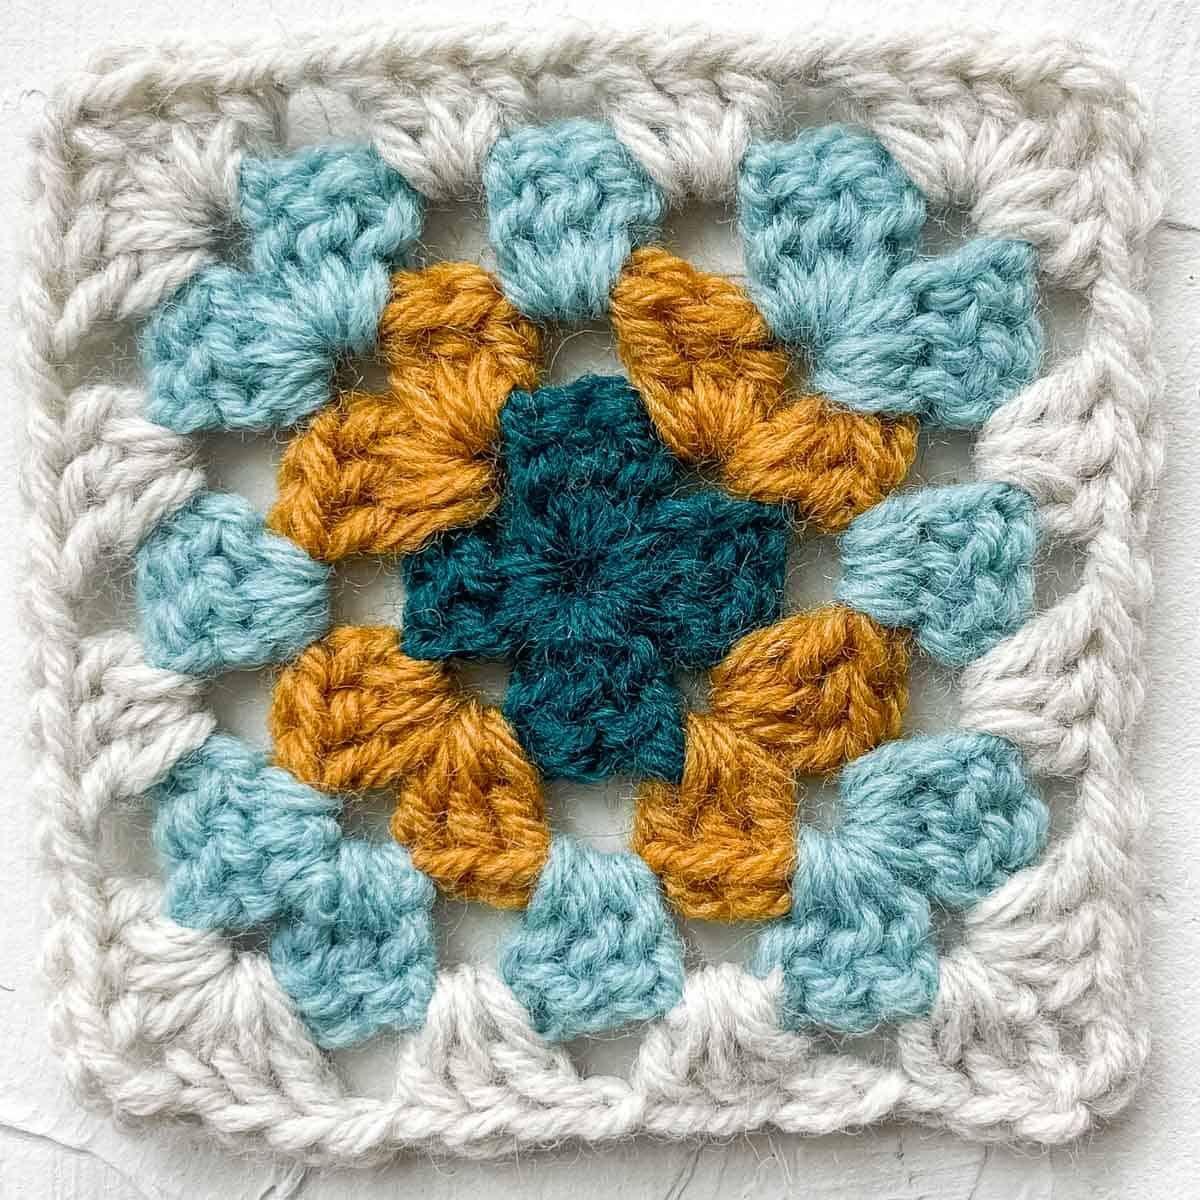 Granny square tutorial round 4: 48 double crochet stitches.